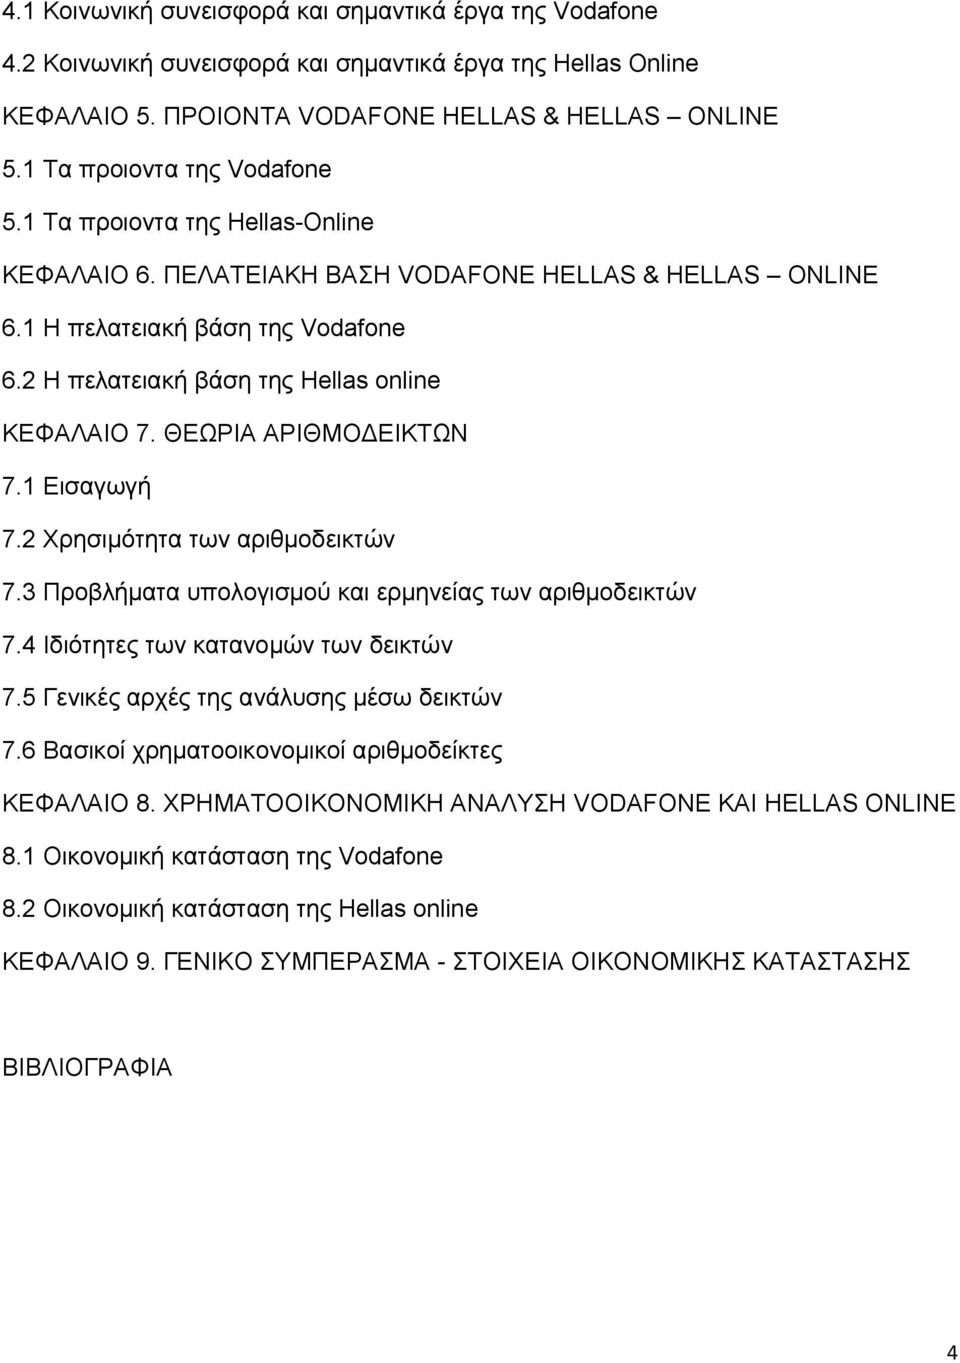 2 Η πελατειακή βάση της Hellas online ΚΕΦΑΛΑΙΟ 7. ΘΕΩΡΙΑ ΑΡΙΘΜΟ ΕΙΚΤΩΝ 7.1 Εισαγωγή 7.2 Χρησιμότητα των αριθμοδεικτών 7.3 Προβλήματα υπολογισμού και ερμηνείας των αριθμοδεικτών 7.